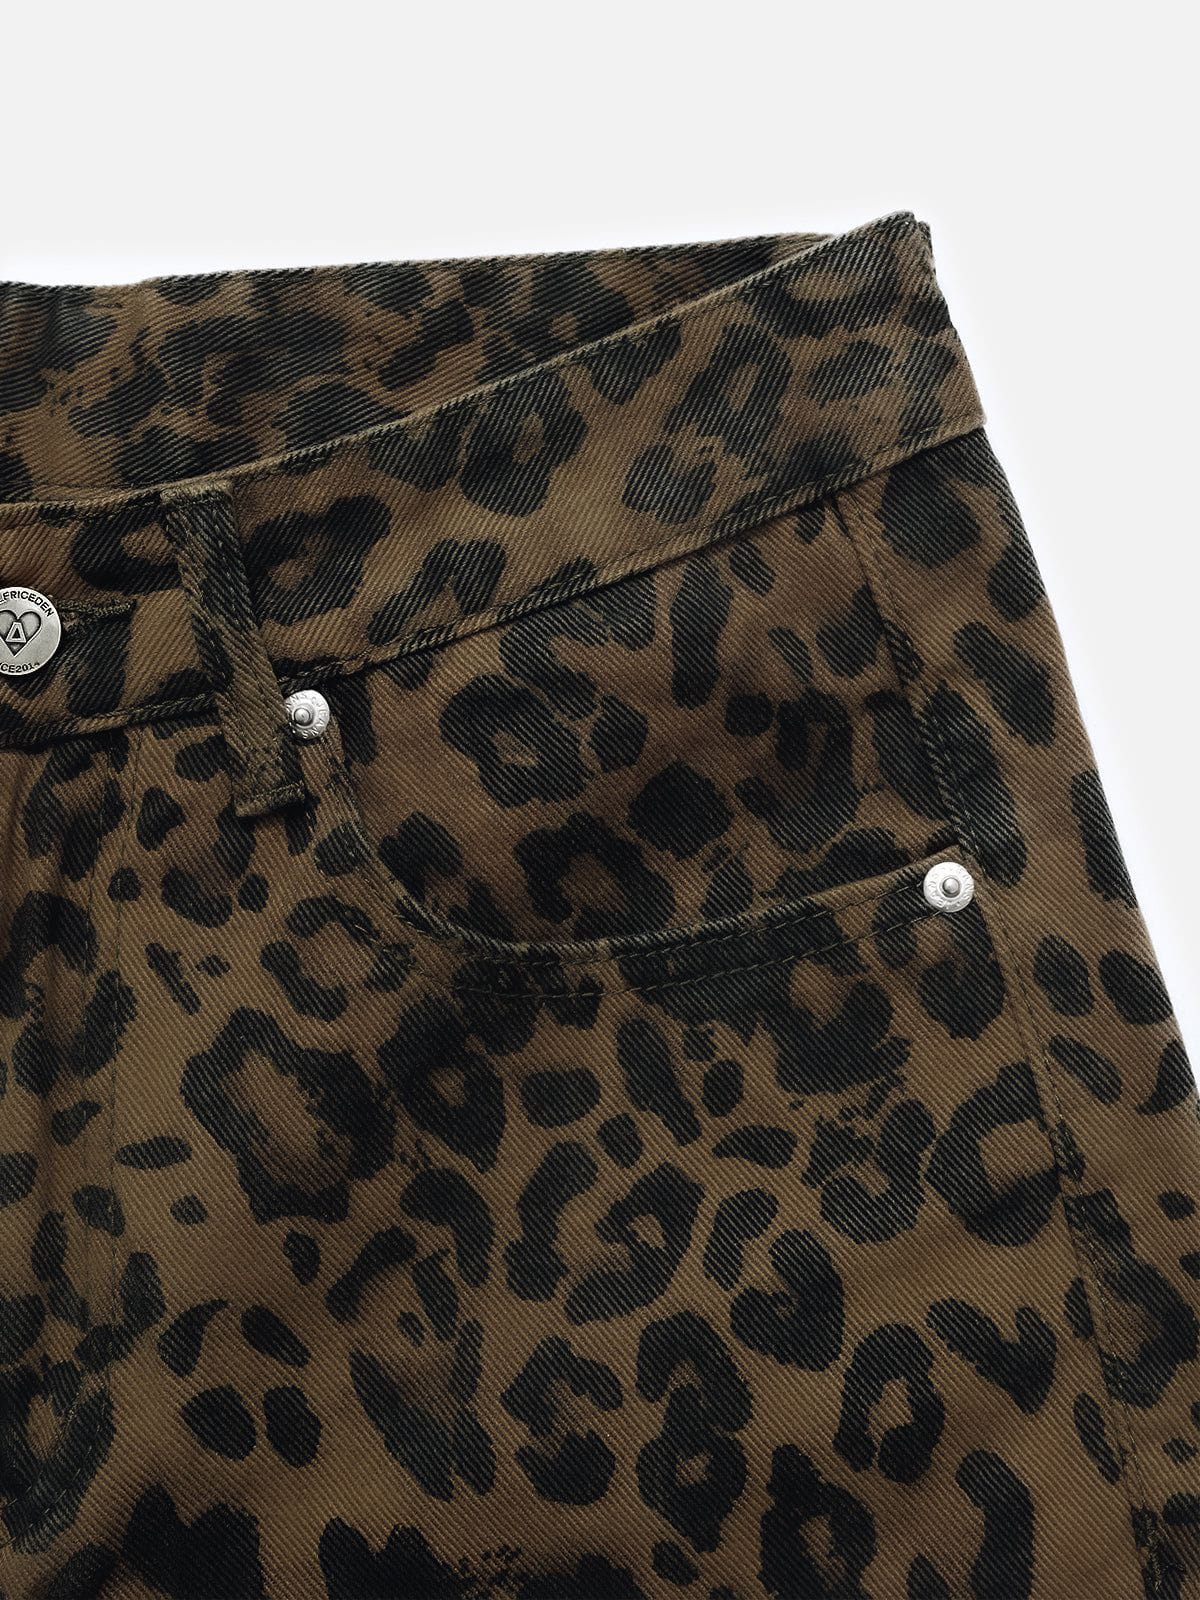 Aelfric Eden Leopard Print Jeans<font color=